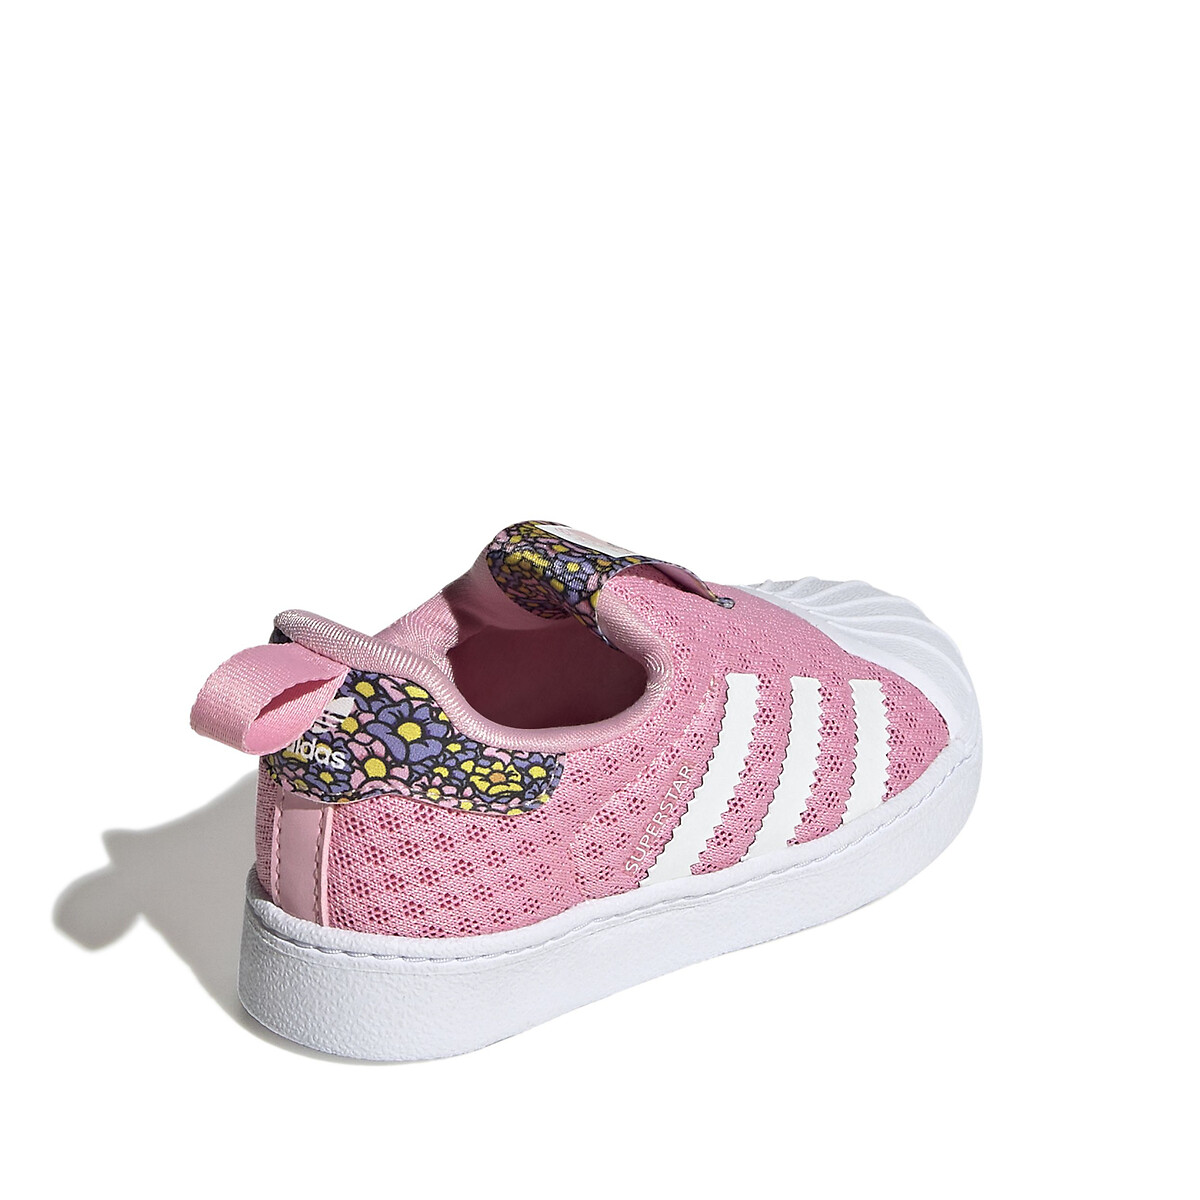 Binnenshuis correct Prelude Sneakers superstar roze Adidas Originals | La Redoute